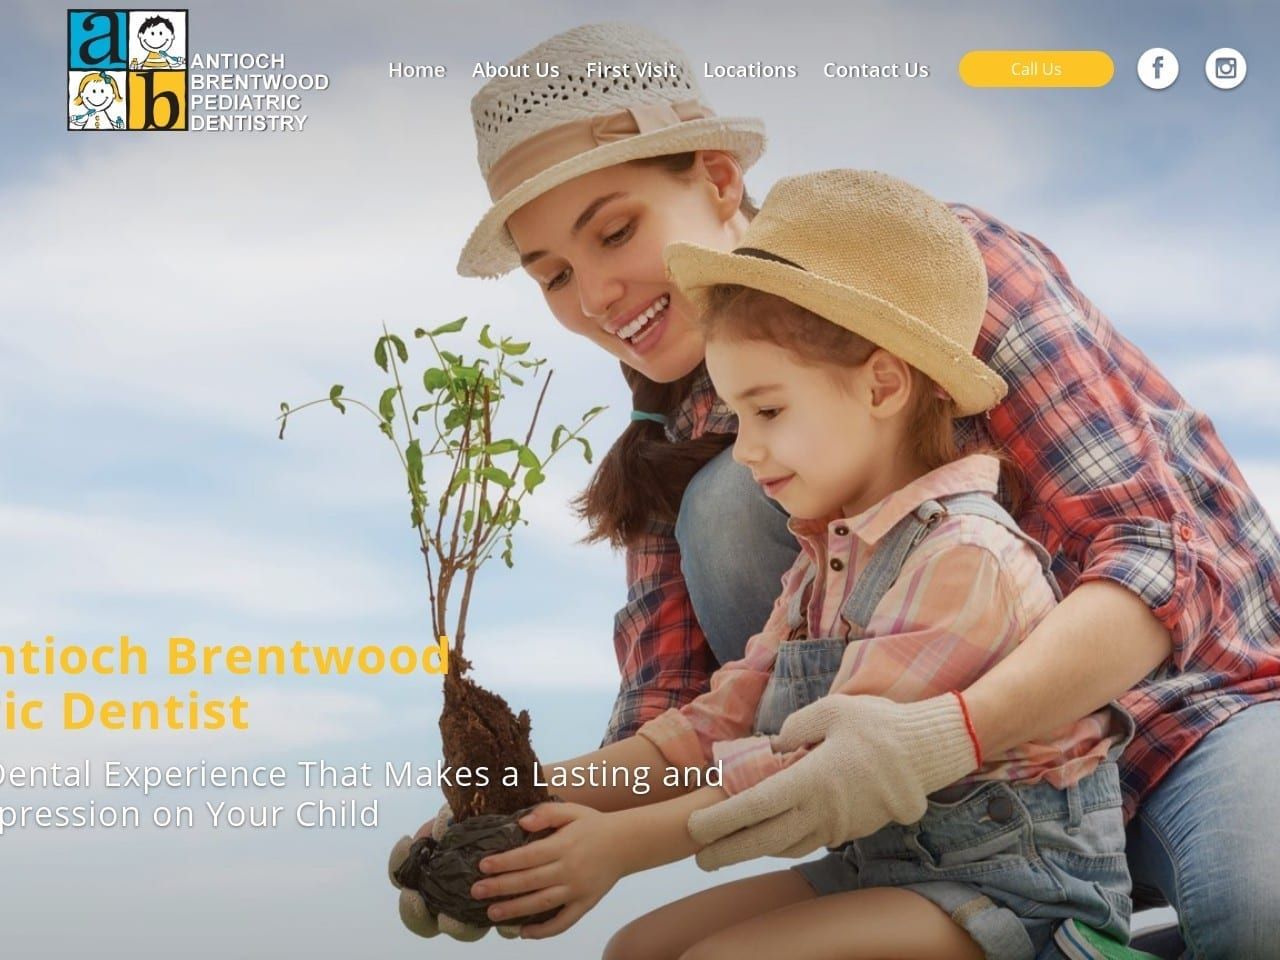 Antioch Brentwood Pediatric Website Screenshot from abkidsdent.com